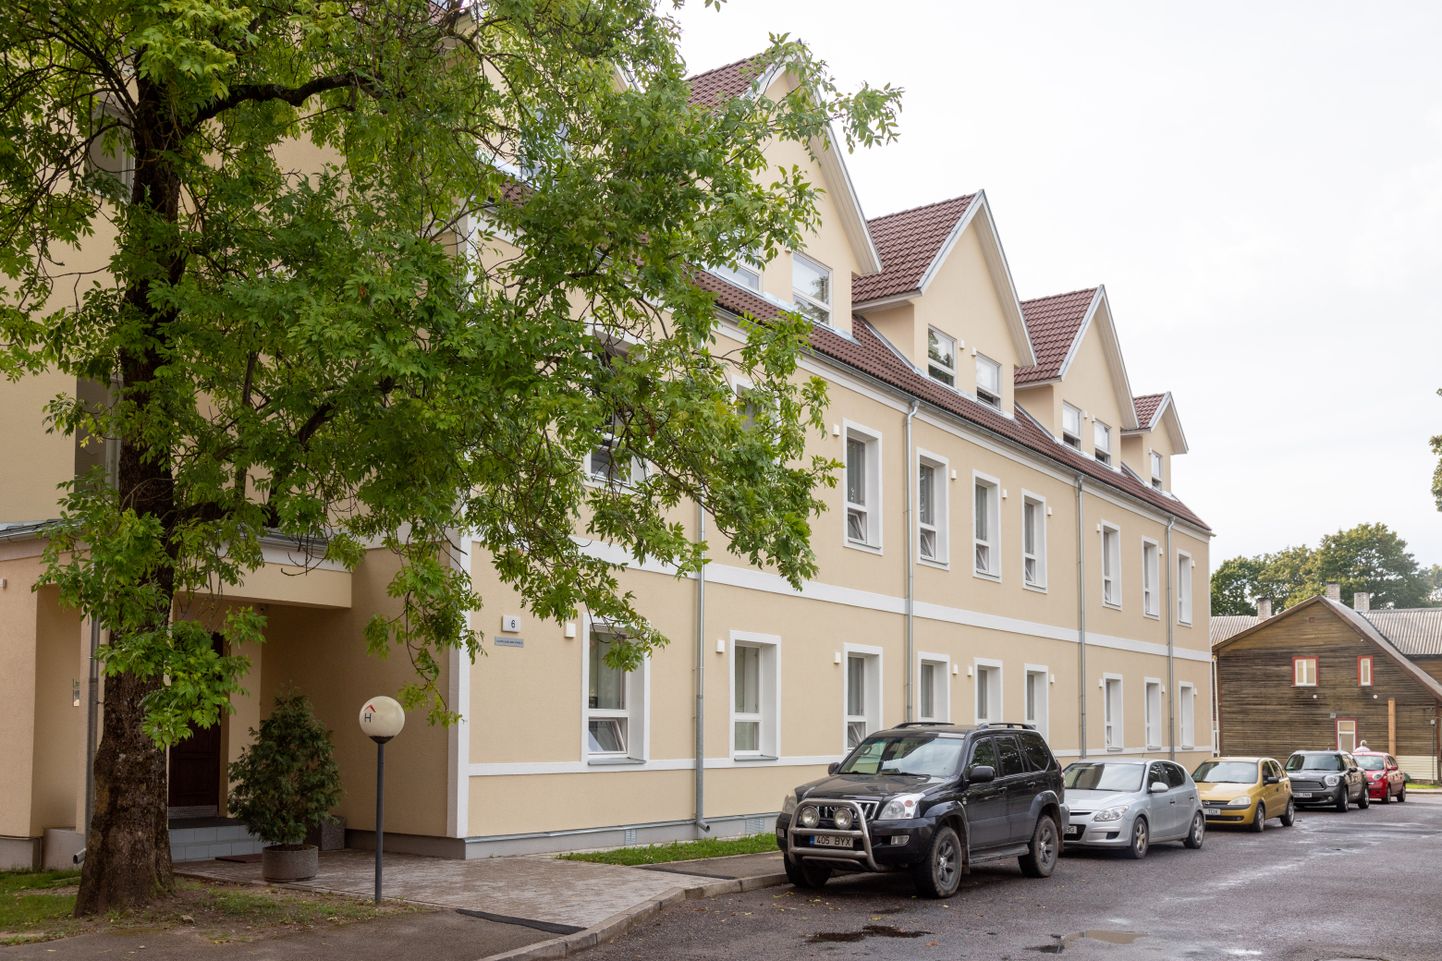 Viljandi tudengitele pakub üliõpilaselamuid mittetulundusühing Tartu Üliõpilasküla ning valikus on kaks maja: Väike 6 (pildil) ja Jakobsoni 41.